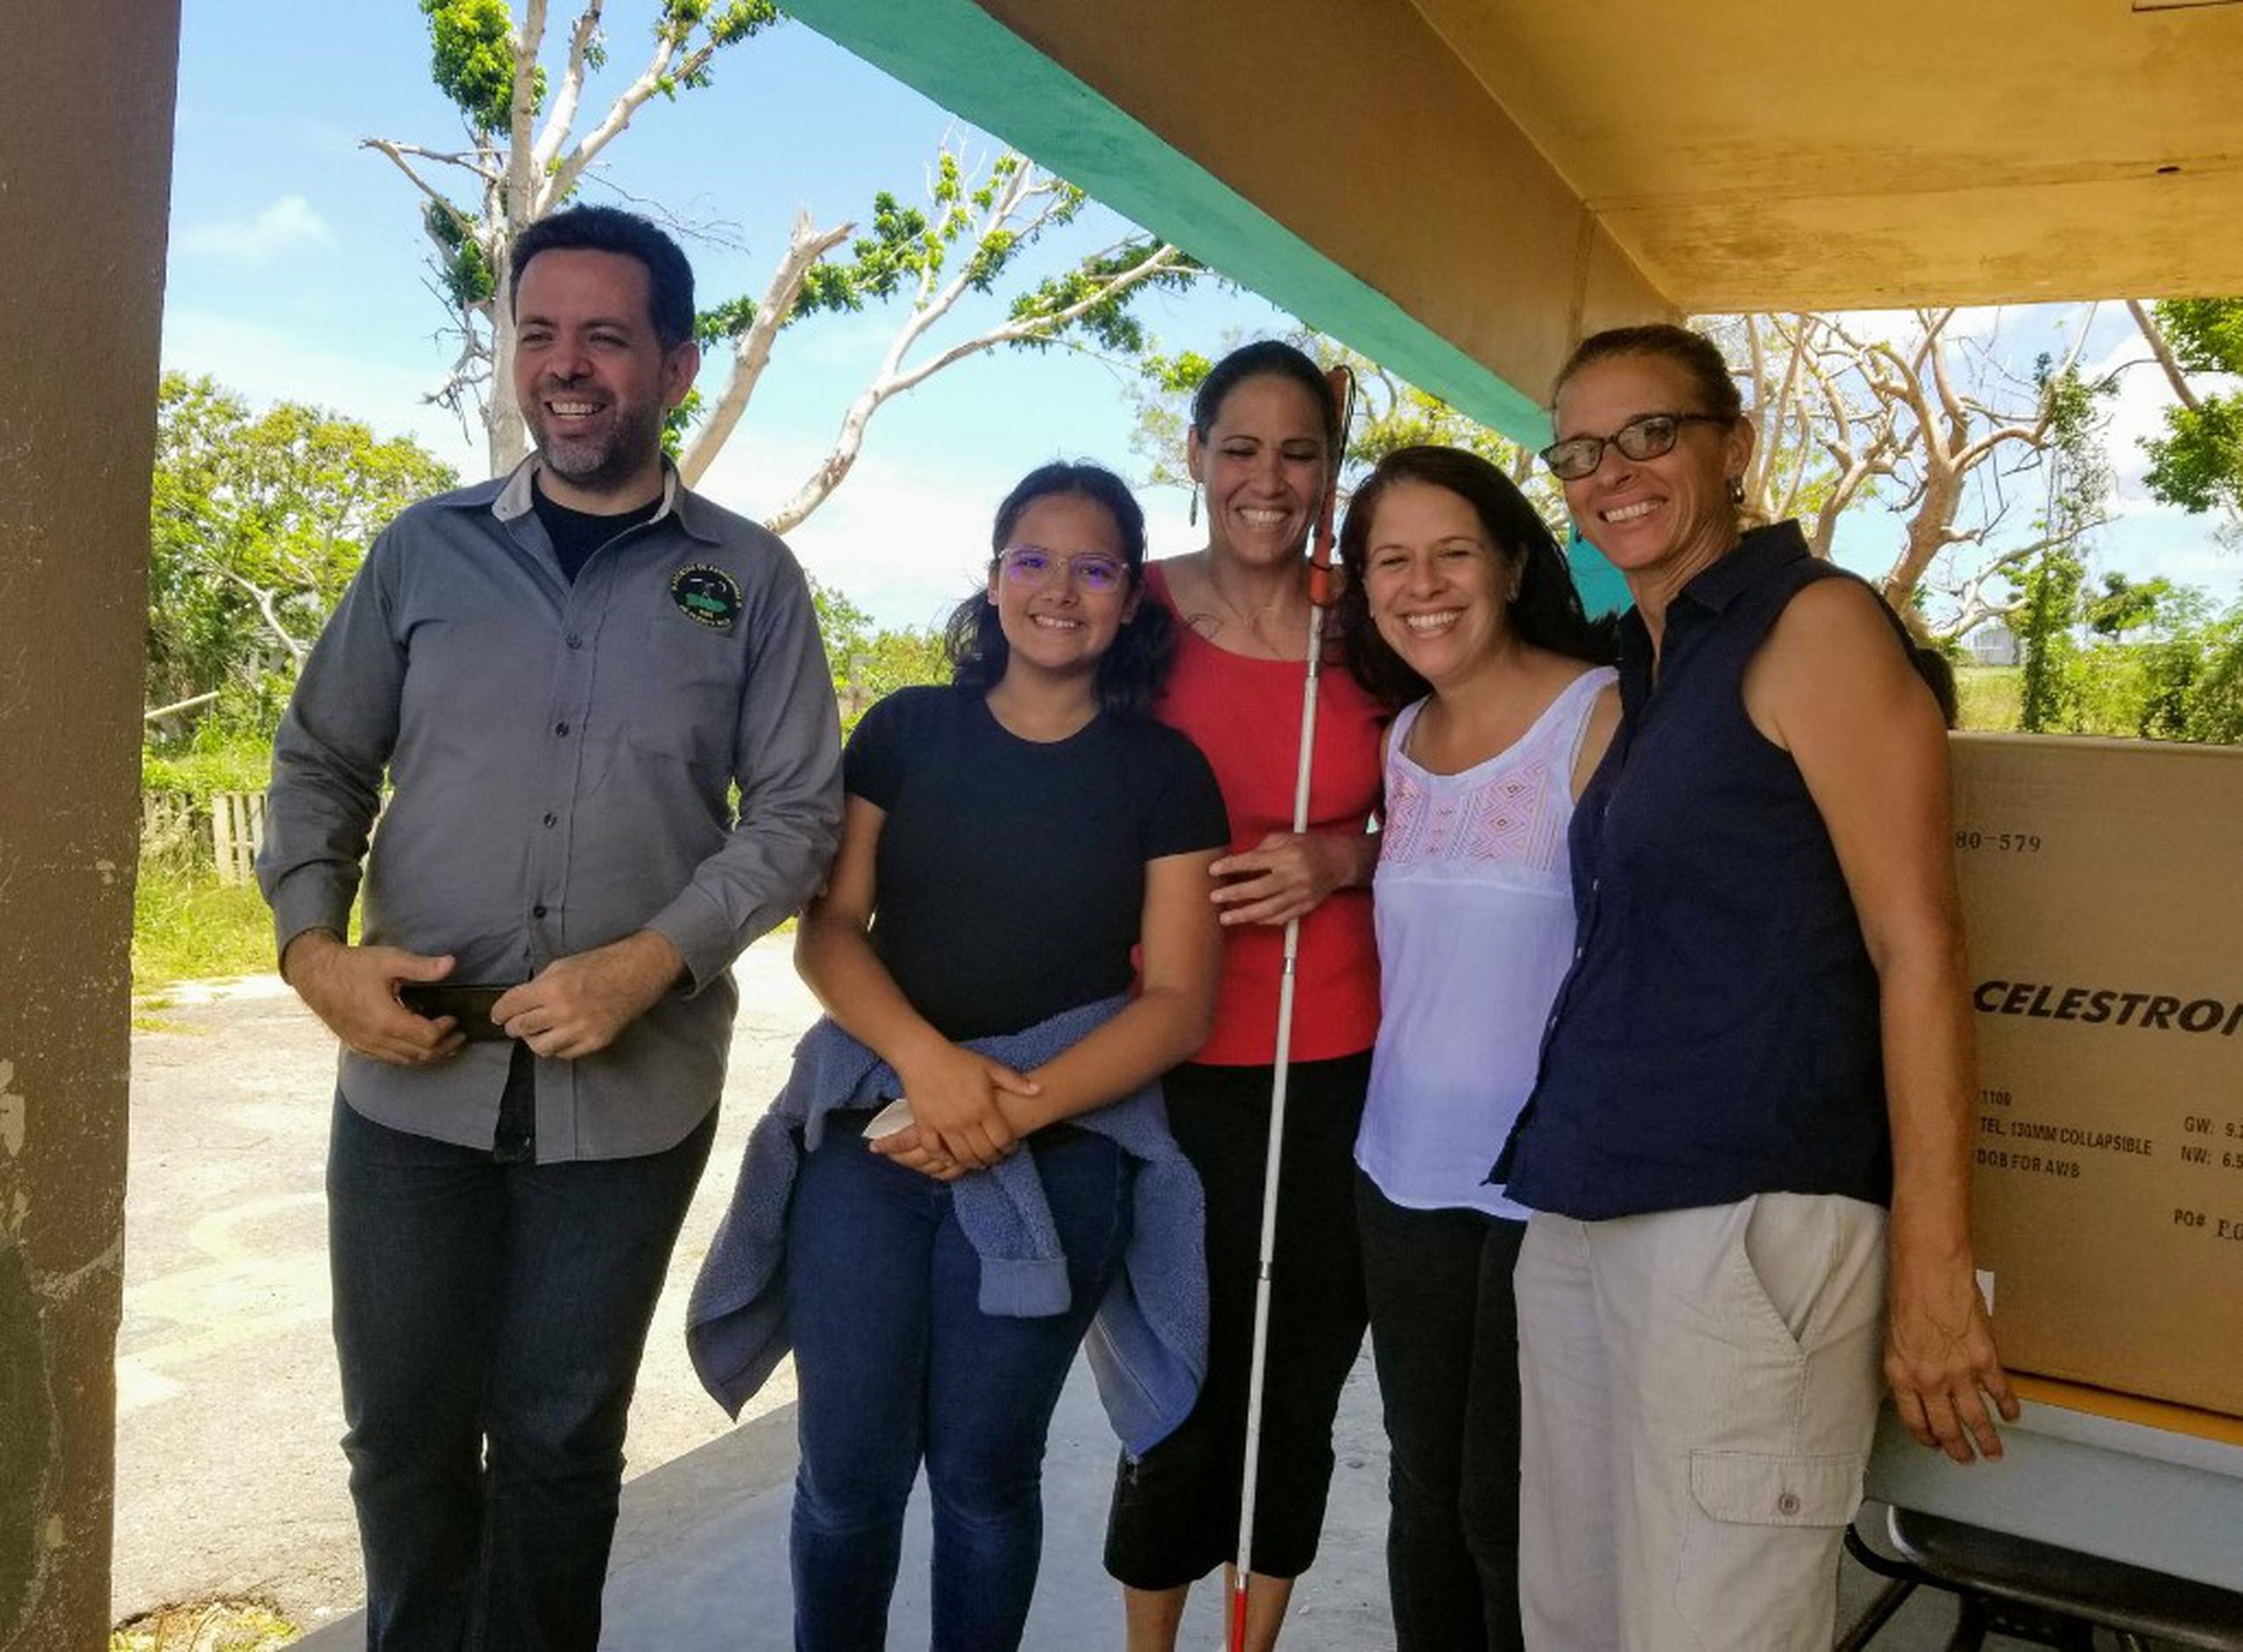 Siempre que puede, la Dra. Wanda Liz Díaz Merced participa de actividades en la Isla. En esta imagen, junto al profesor Juan Villafañe, de la Sociedad de Astronomía de Puerto Rico, durante la visita y entrega de telescopios en la Escuela Adrienne Serrano de Vieques.